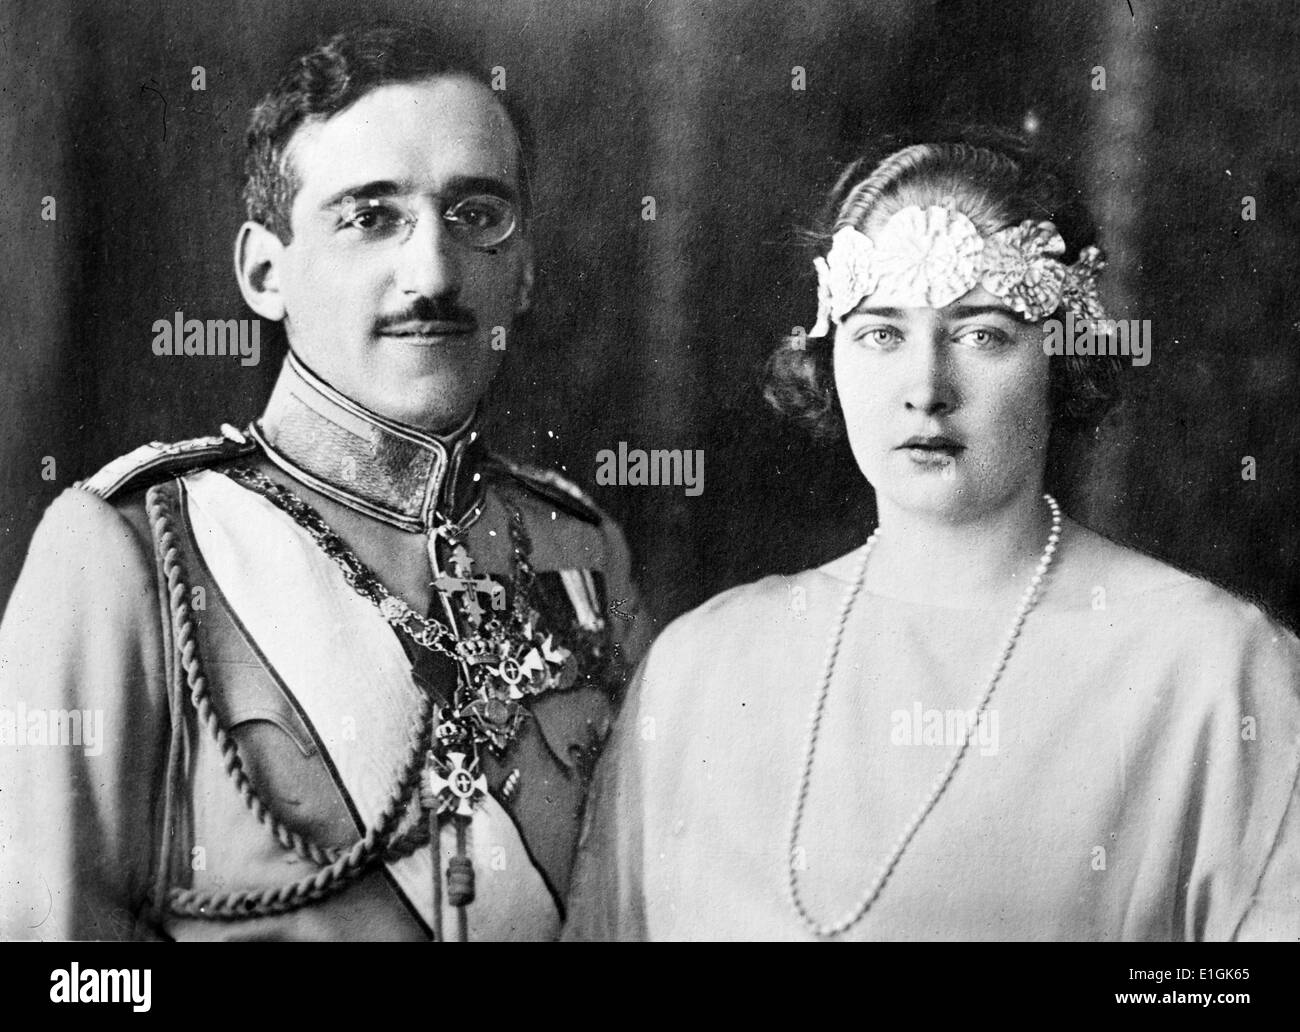 Alessandro I 1888 - 9 ottobre 1934) il principe reggente del regno di Serbia e più tardi un re di Iugoslavia dal 1921-34 con Maria di Romania 1900 - 22 giugno 1961), Regina della Iugoslavia come la moglie del re Alessandro. Foto Stock